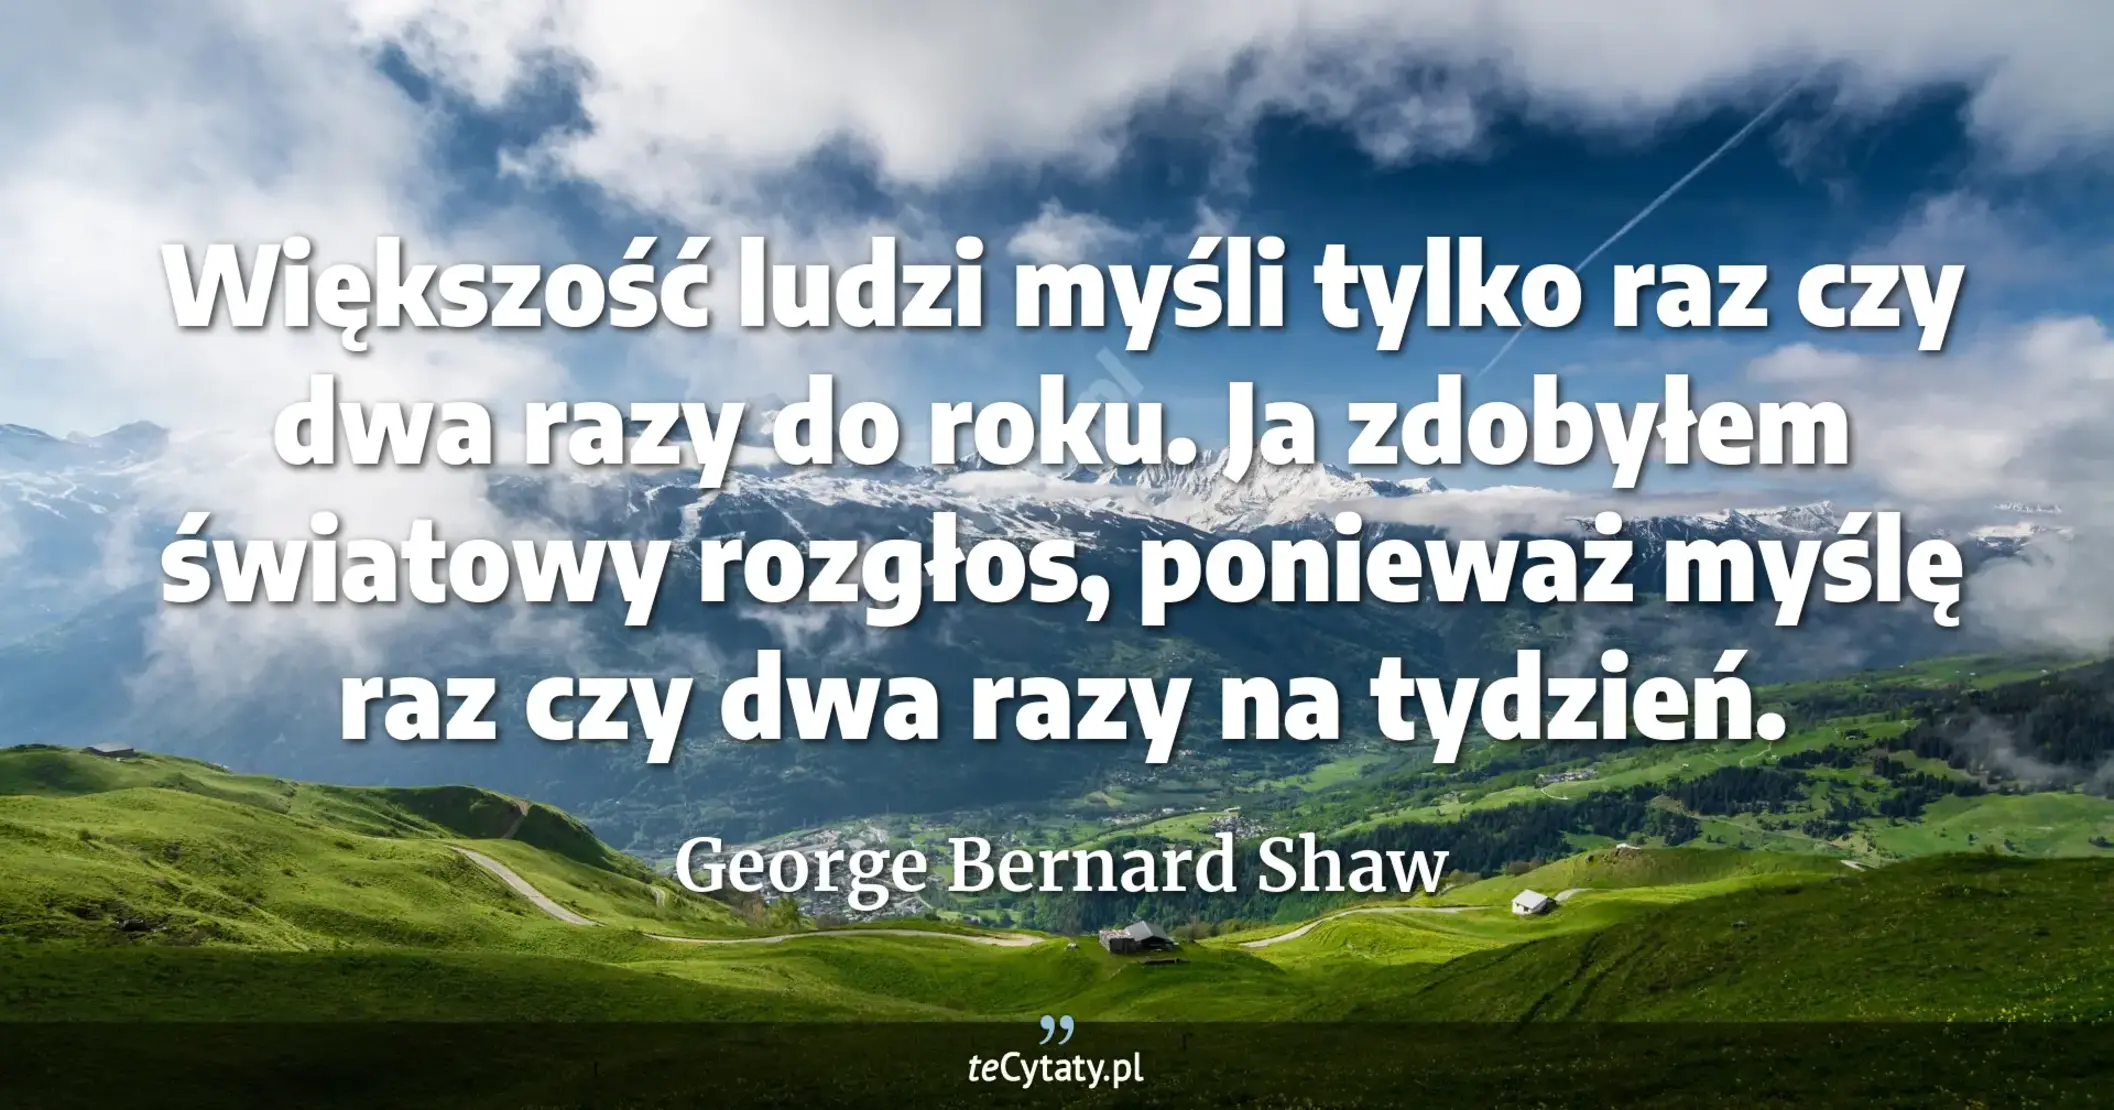 Większość ludzi myśli tylko raz czy dwa razy do roku. Ja zdobyłem światowy rozgłos, ponieważ myślę raz czy dwa razy na tydzień. - George Bernard Shaw